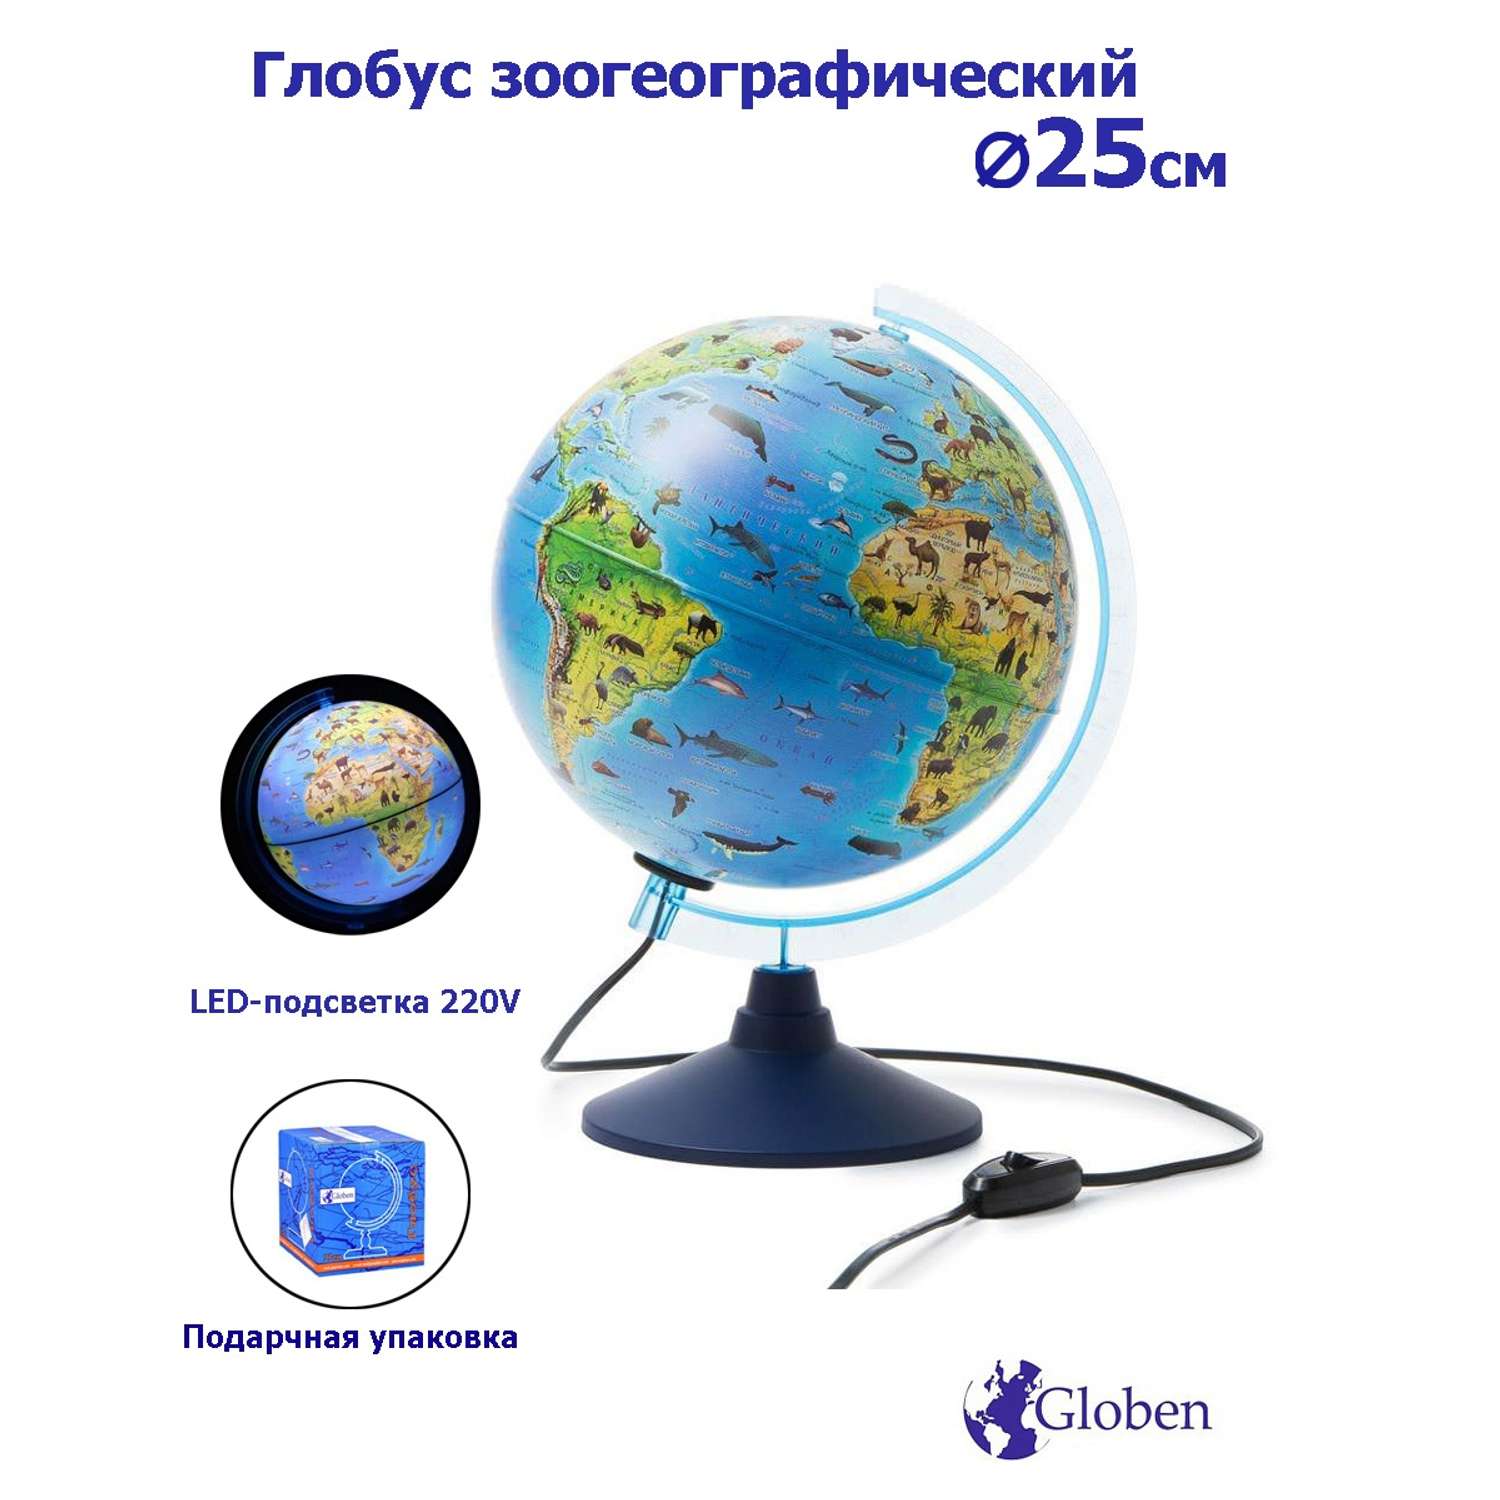 Глобус Globen Зоогеографический детский с LED-подсветкой 25 см - фото 1